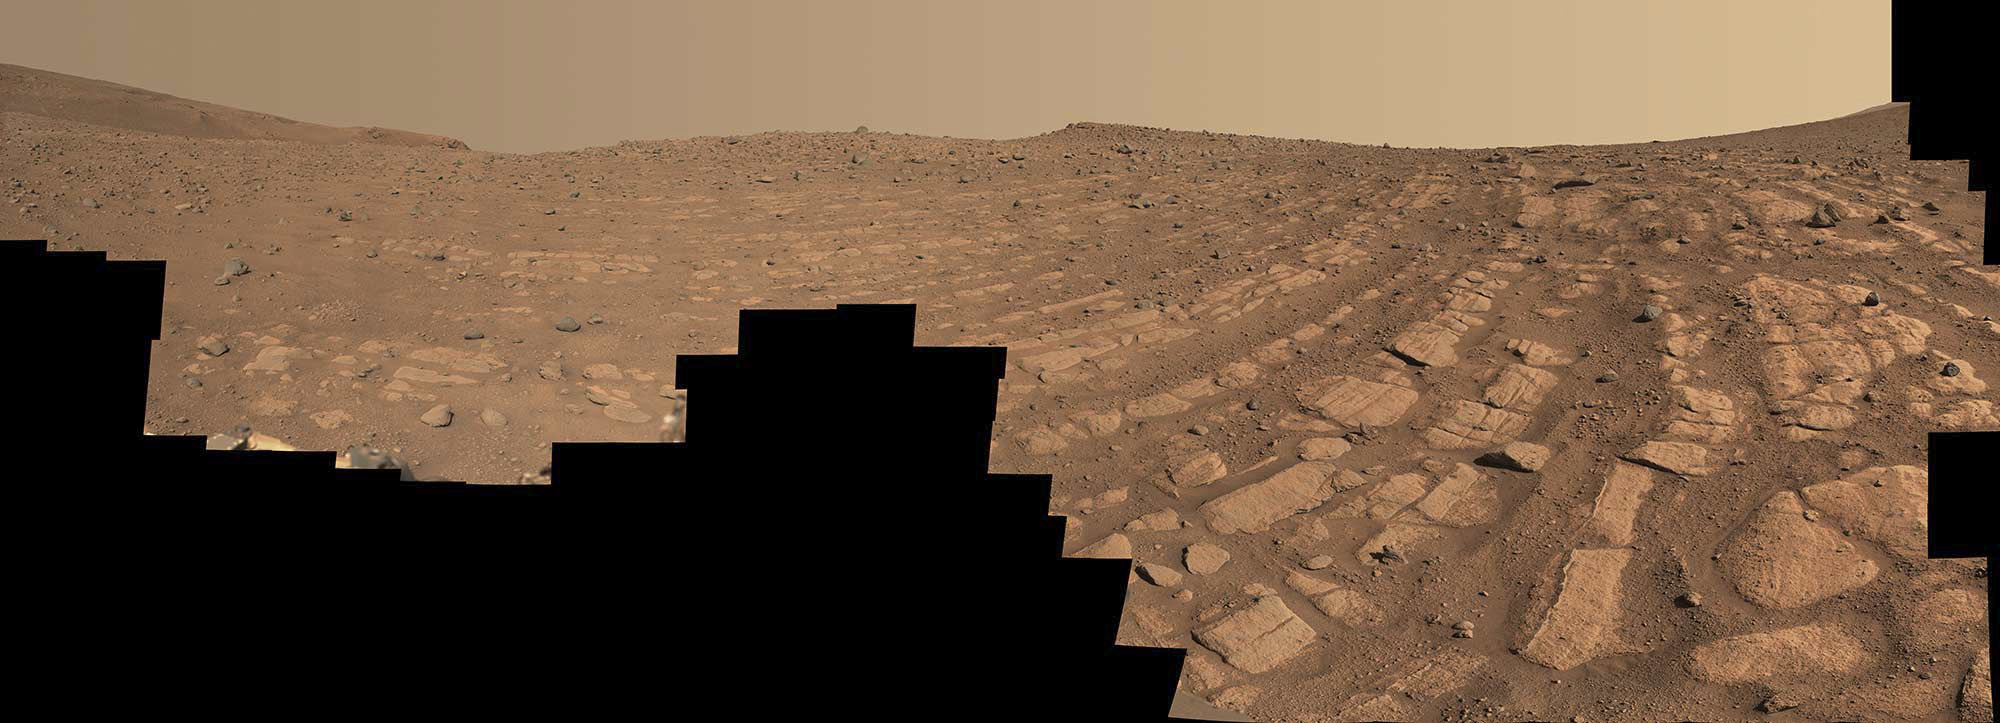 Imgenes transmitidas por el rover Perseverance en Marte.